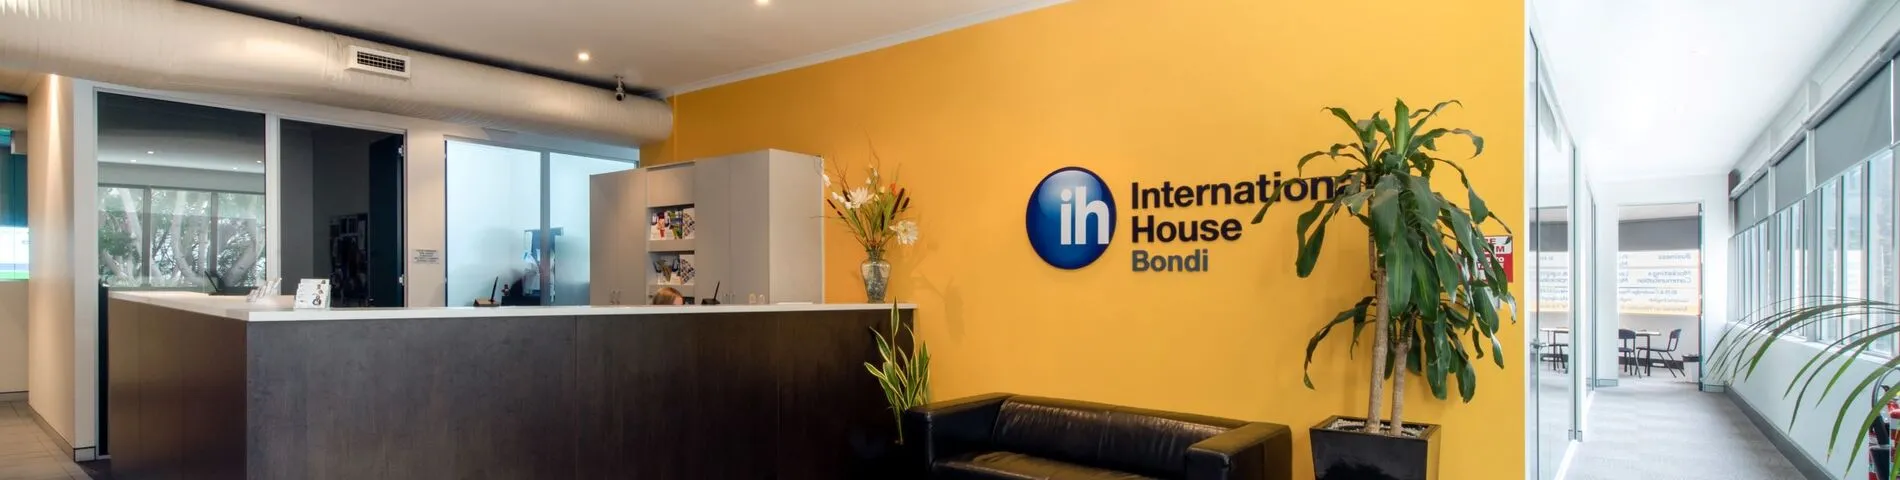 International House obrazek 1